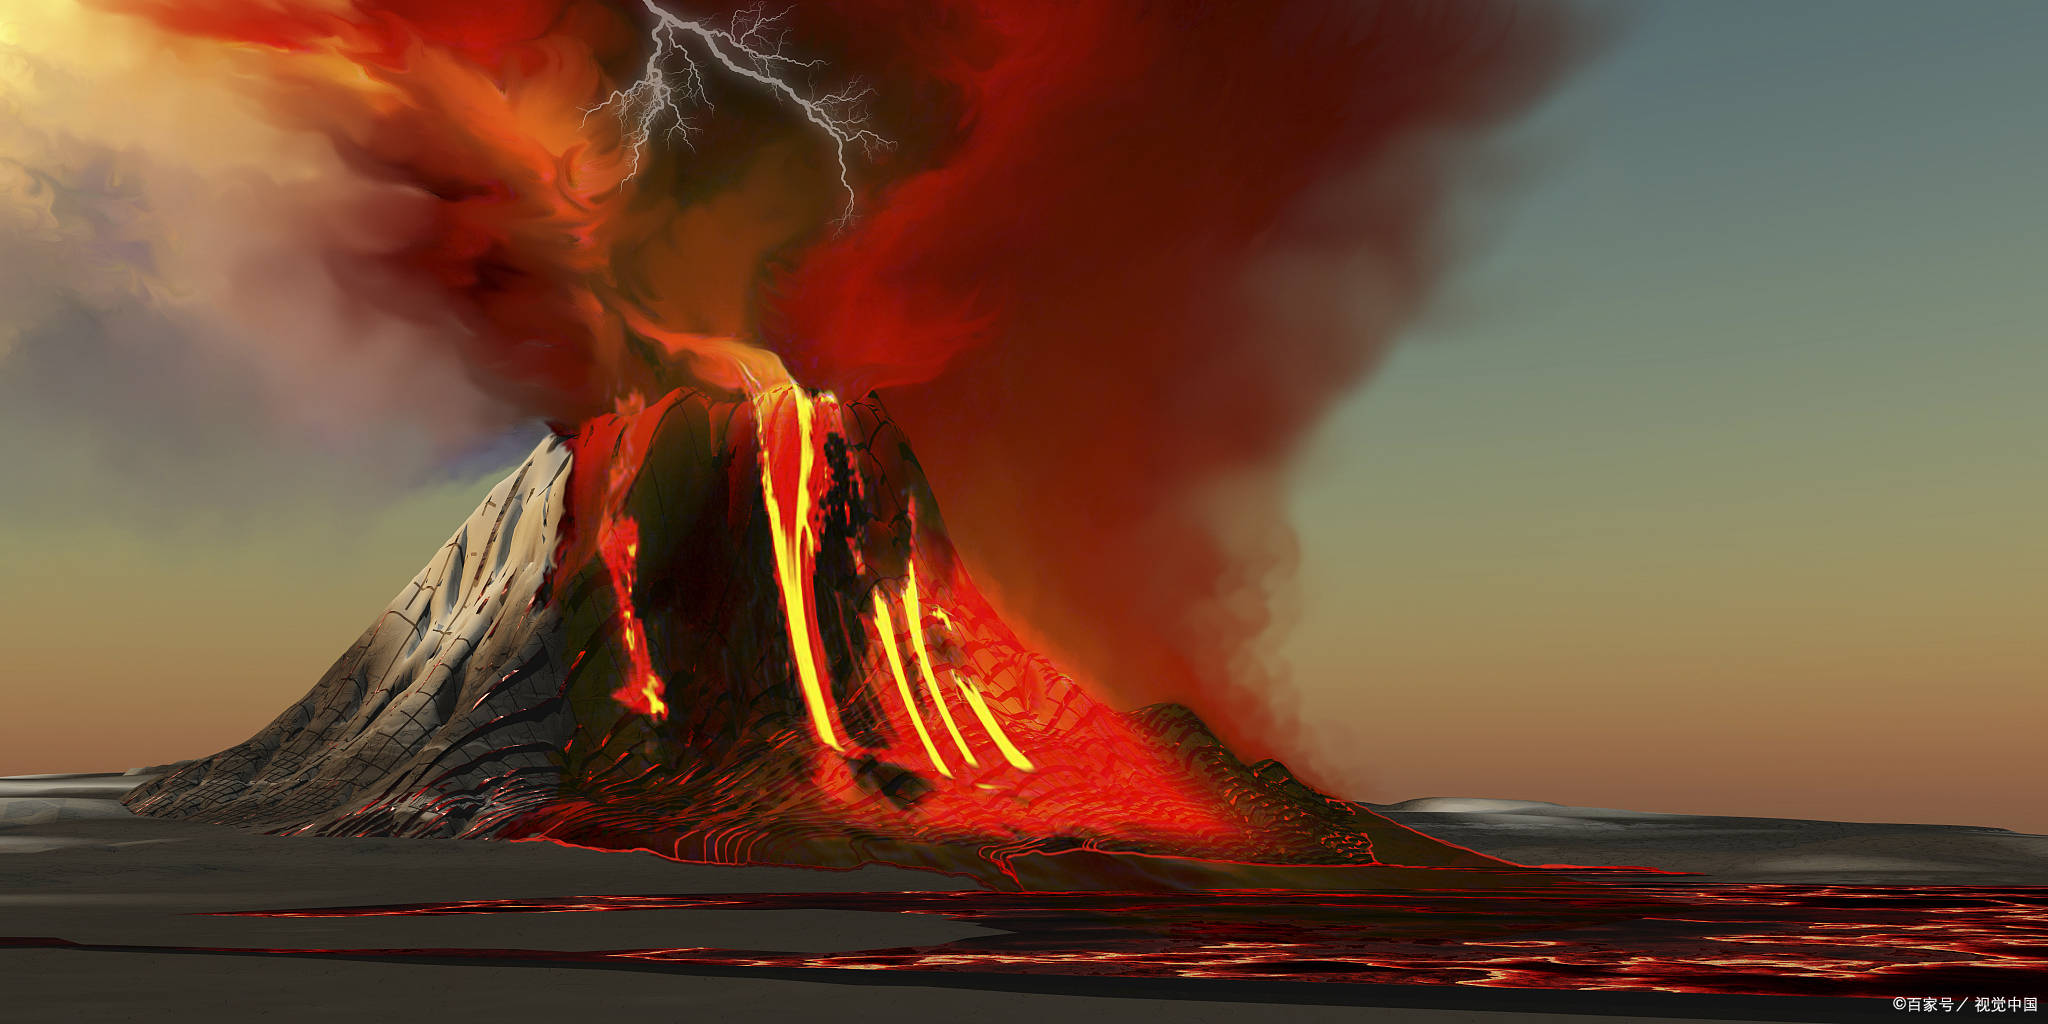 印尼北马鲁古省的伊布火山于近日突然喷发,给当地居民带来不小的影响